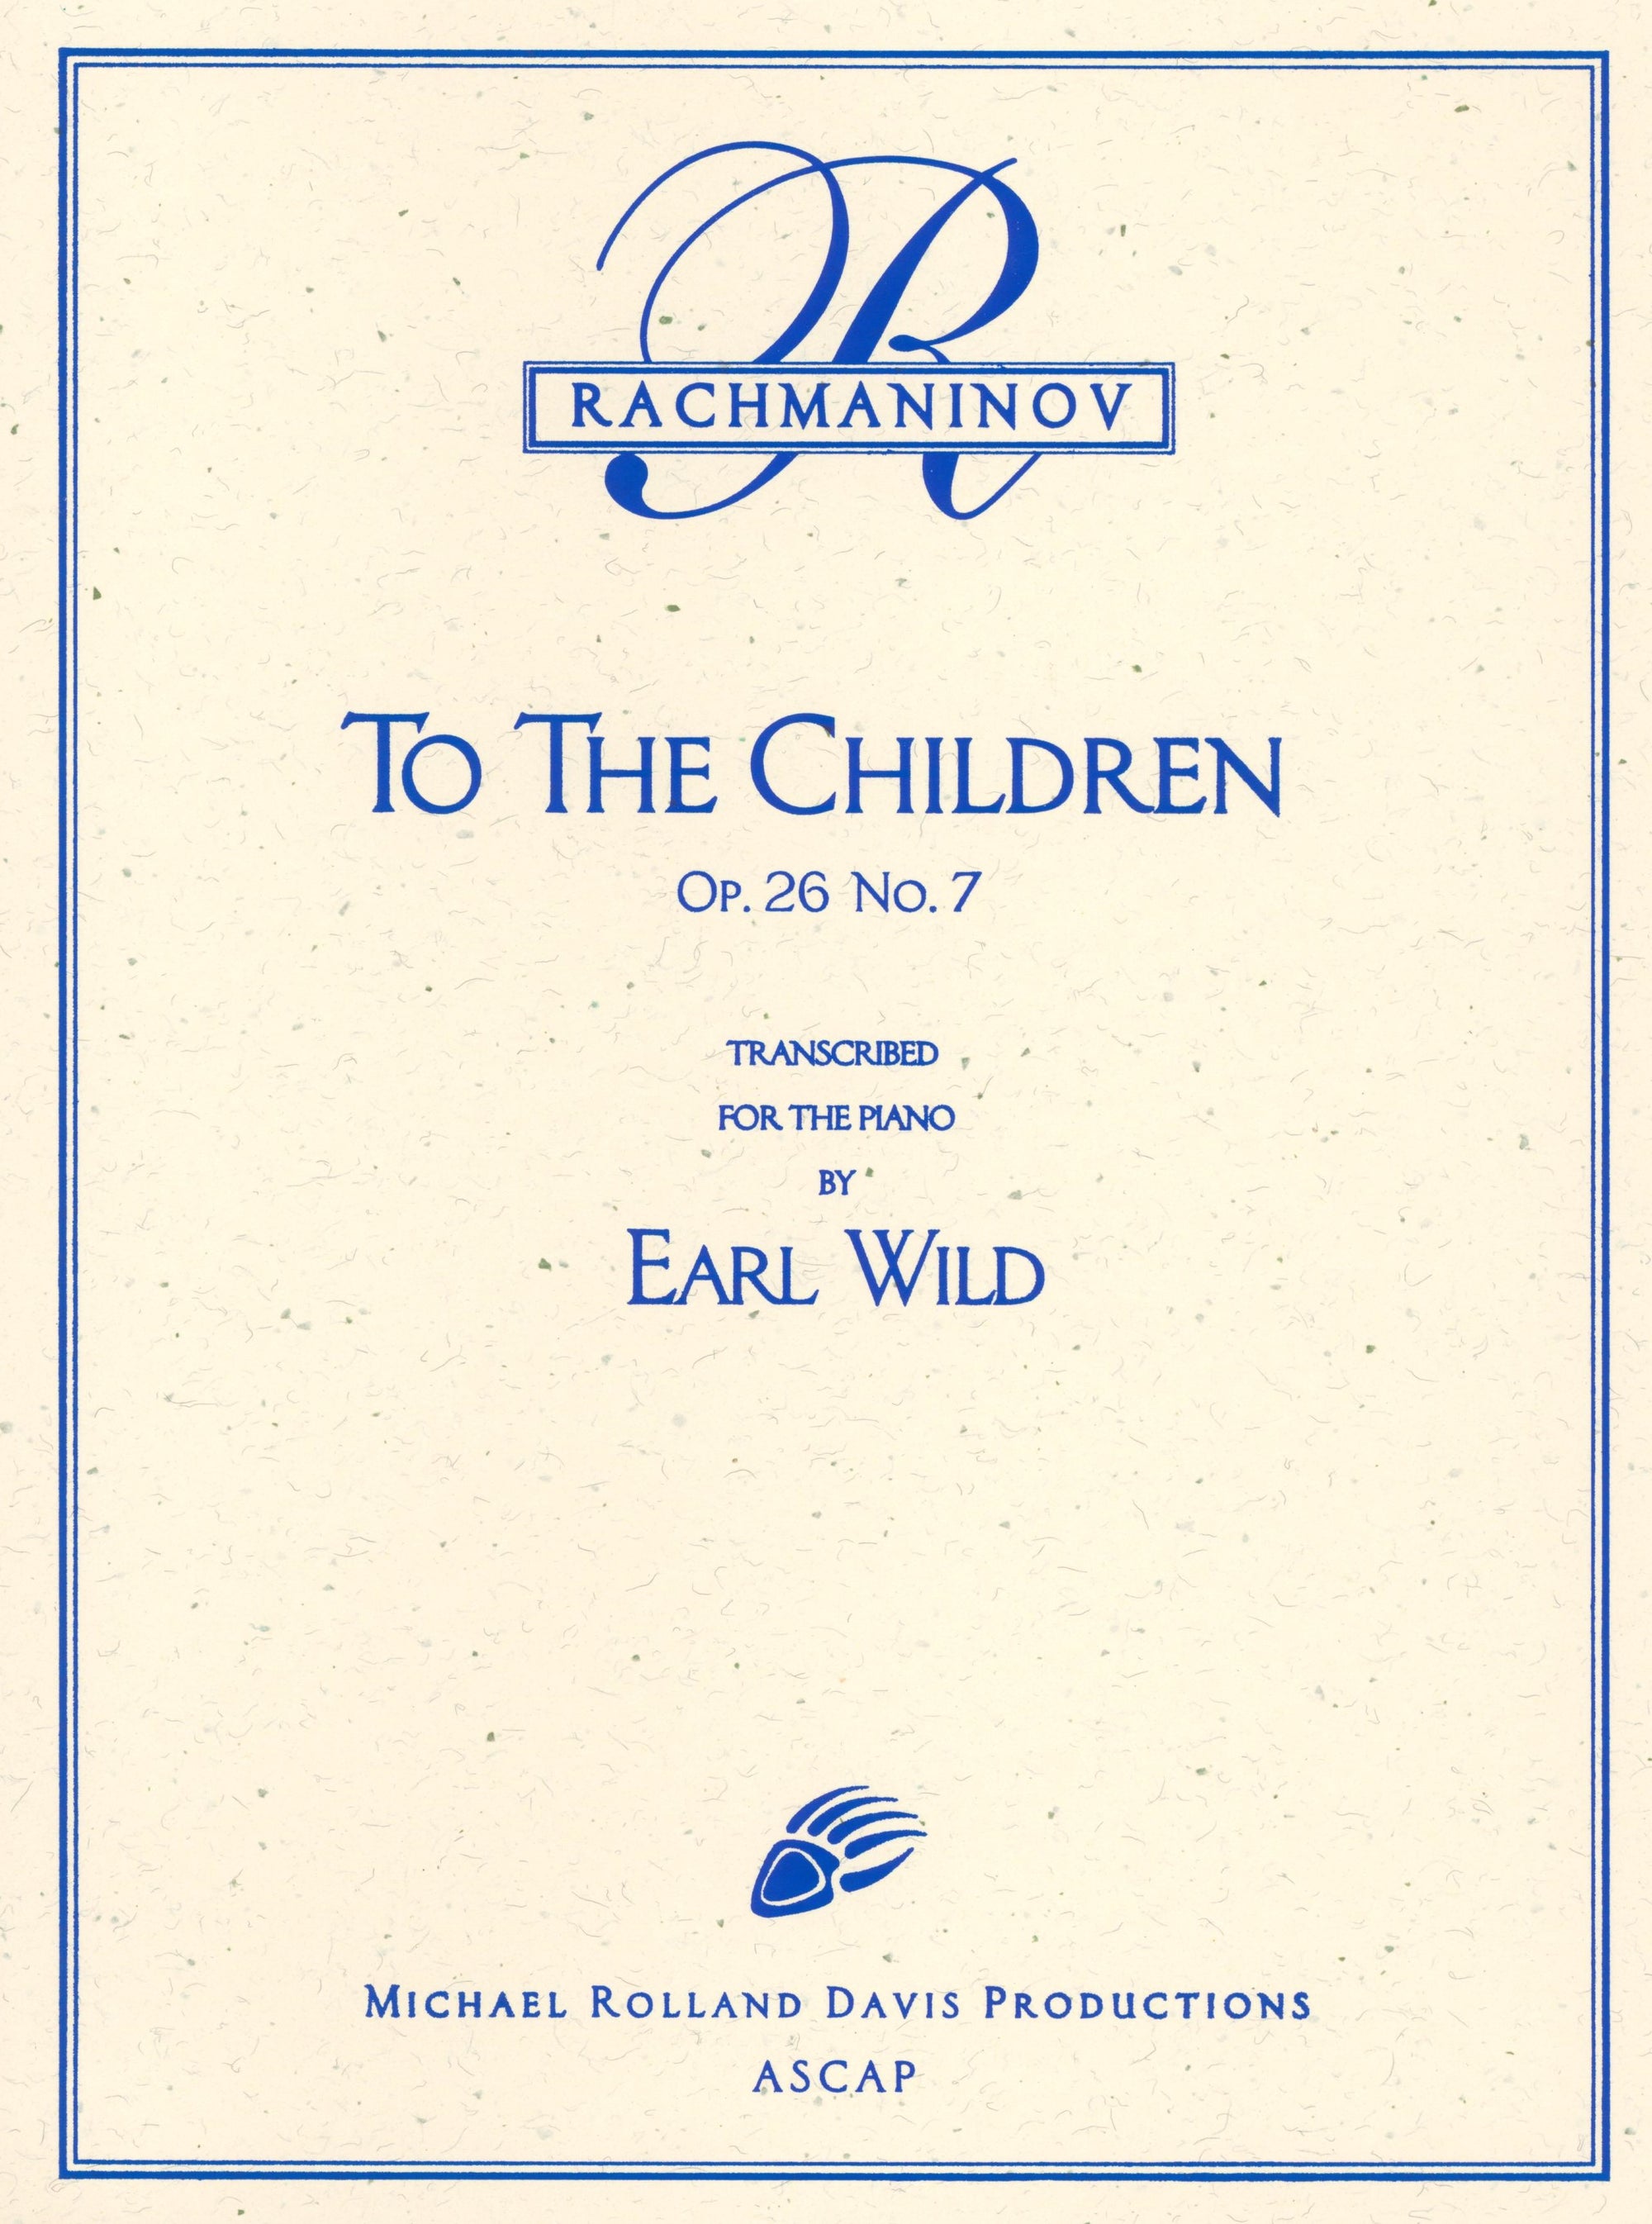 Rachmaninoff-Wild: To the Children, Op. 26, No. 7